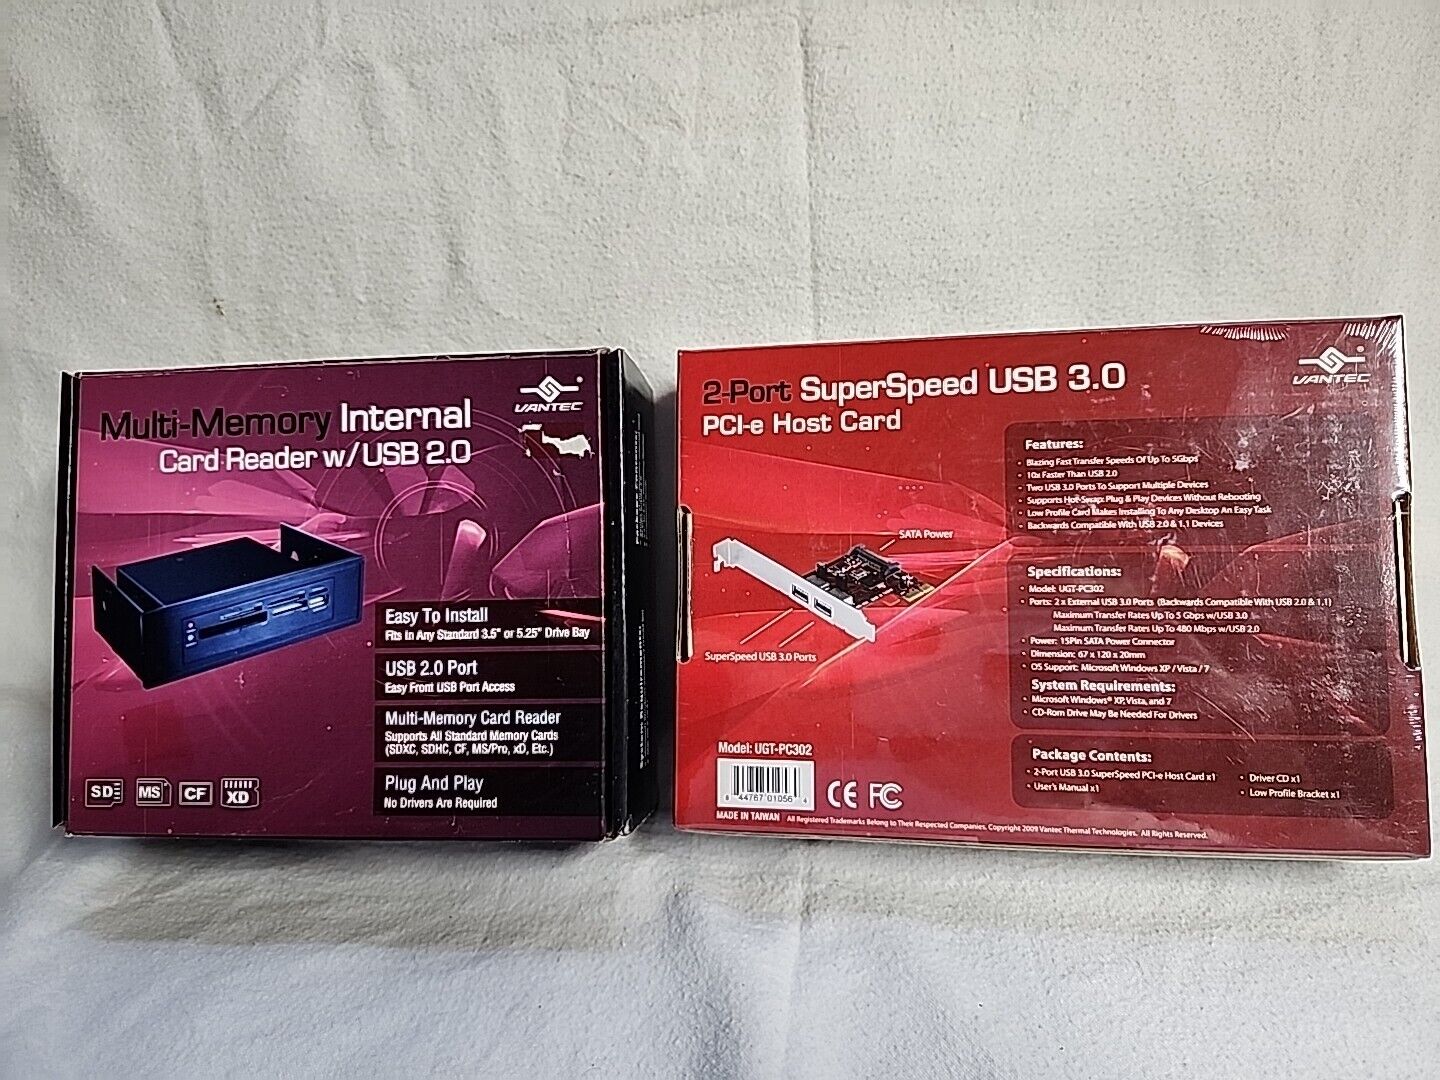 Mutli MemCard Reader w/ USB 2.0 Black & 2 Port Super Speed USB 3.0 PCI-e Host Cd